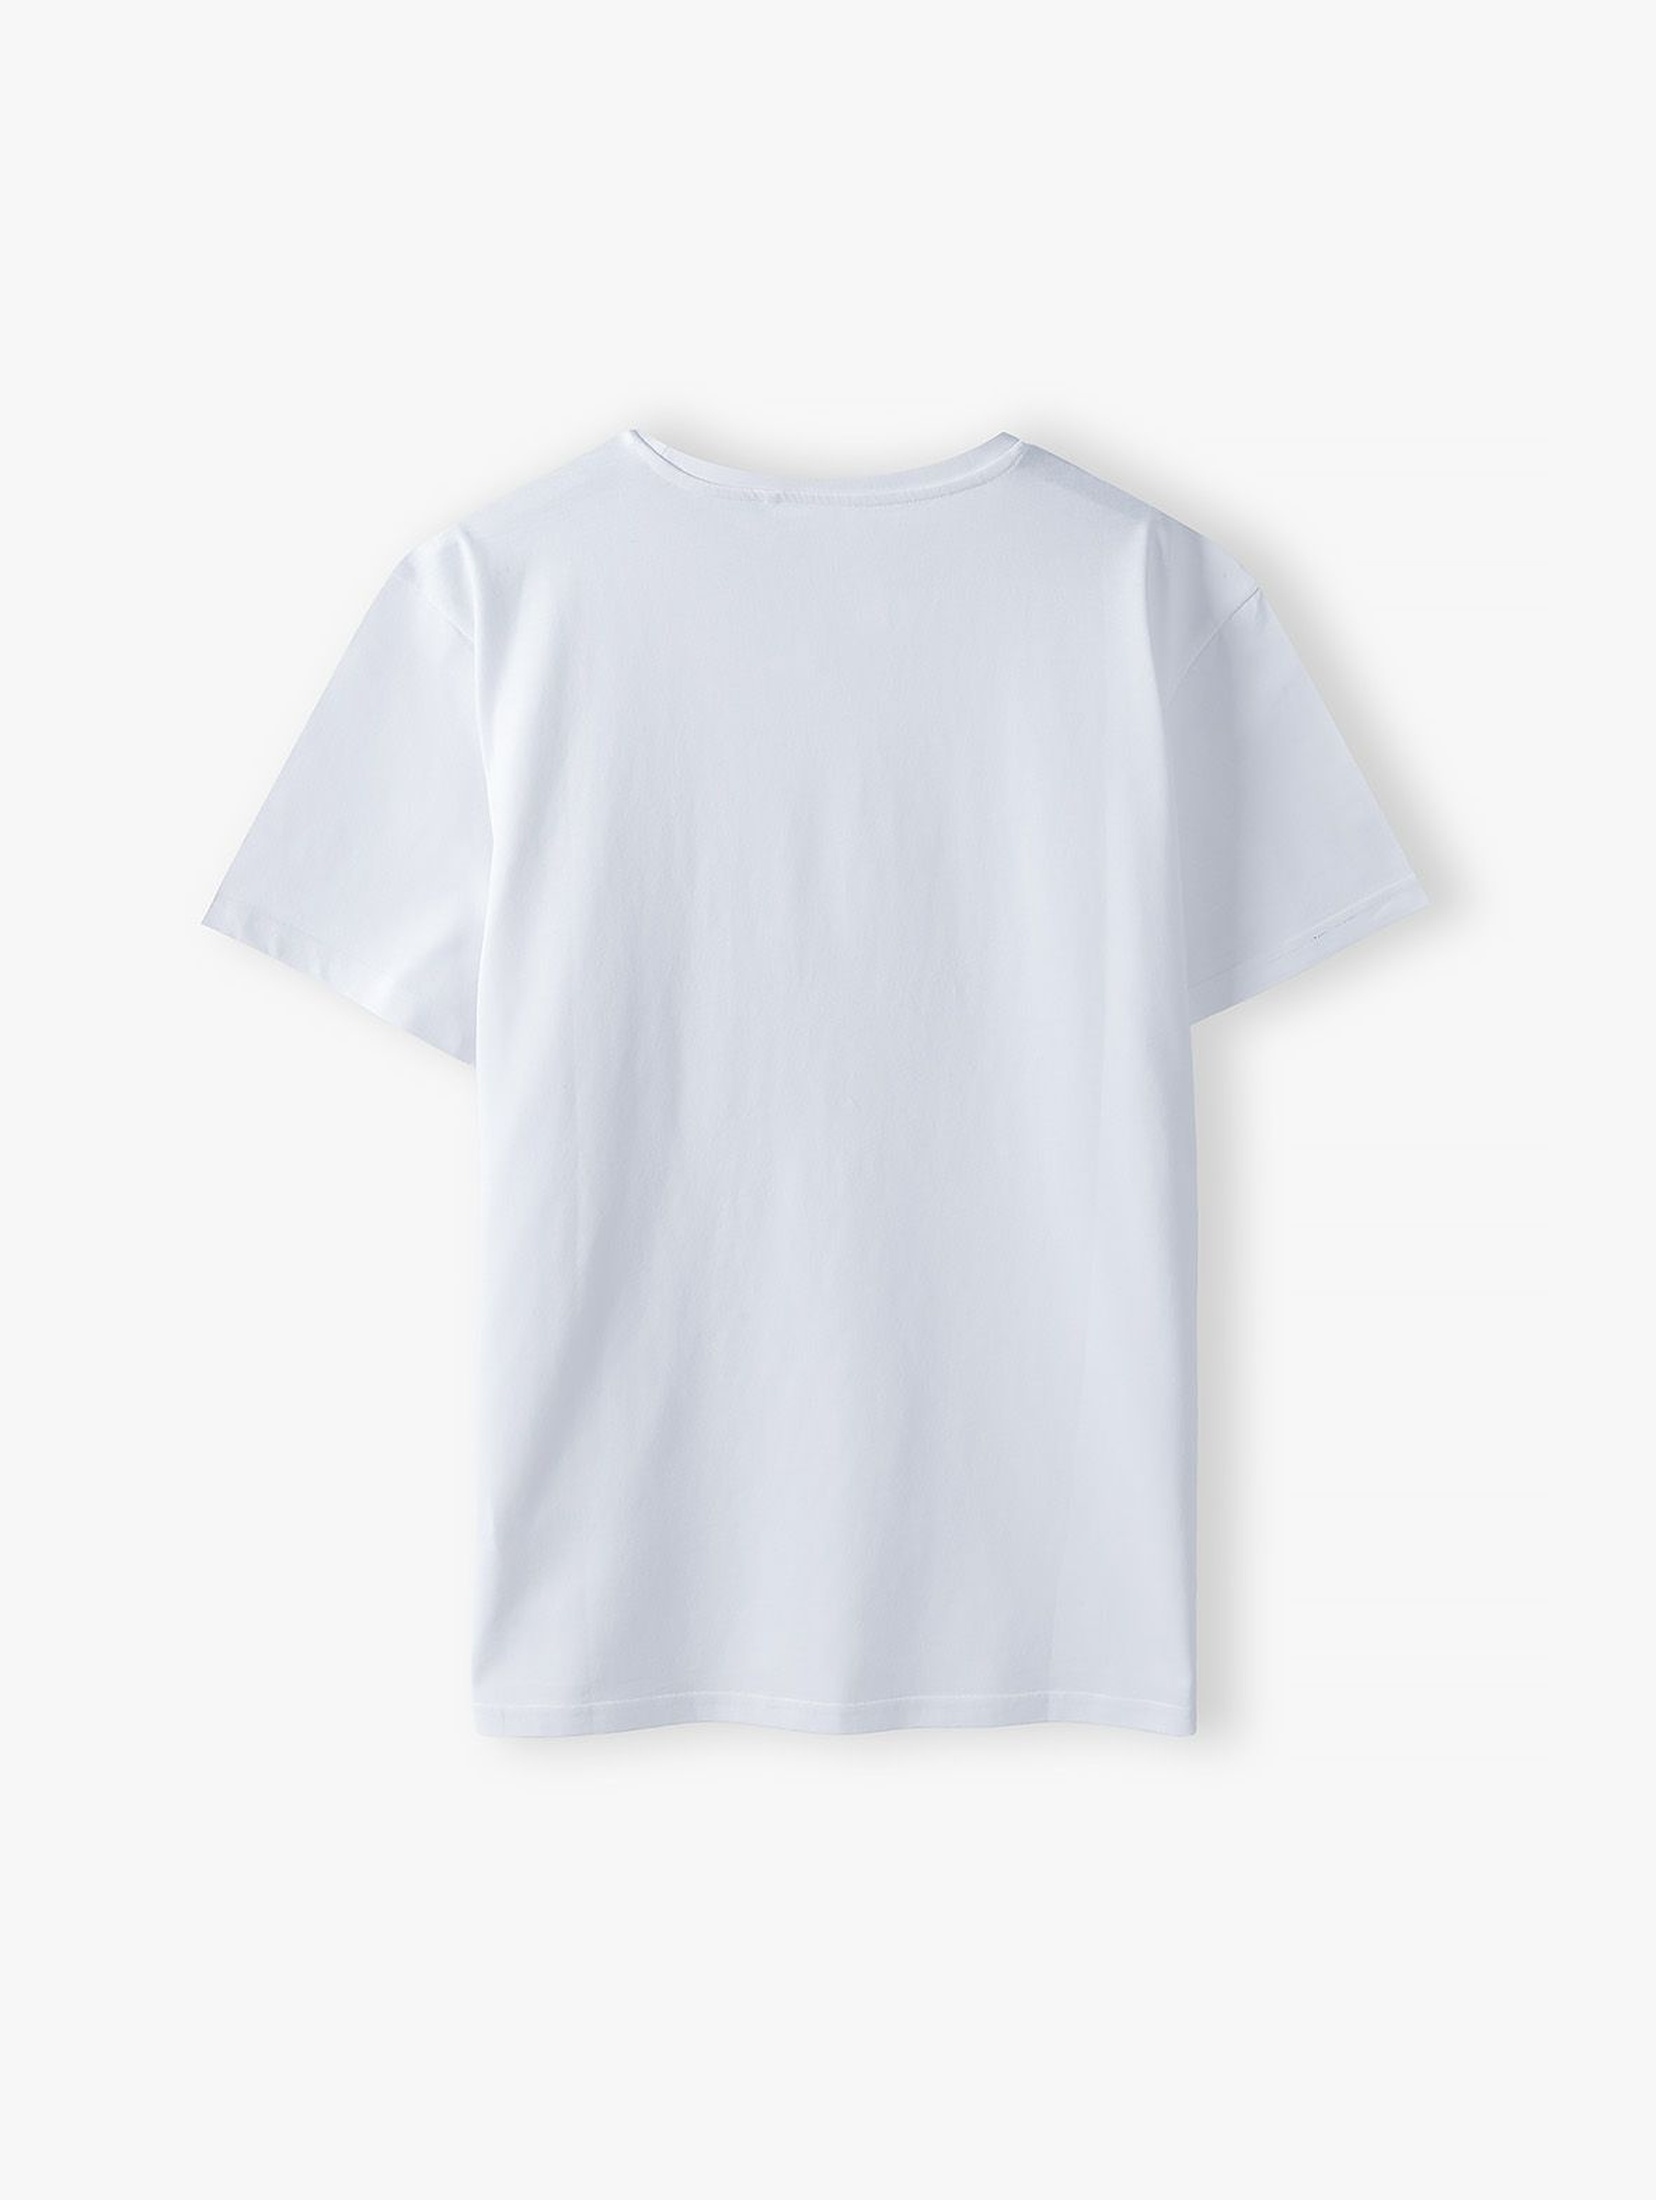 Bawełniany t-shirt dla mężczyzny biały z napisem- Tata- ubrania dla całej rodziny